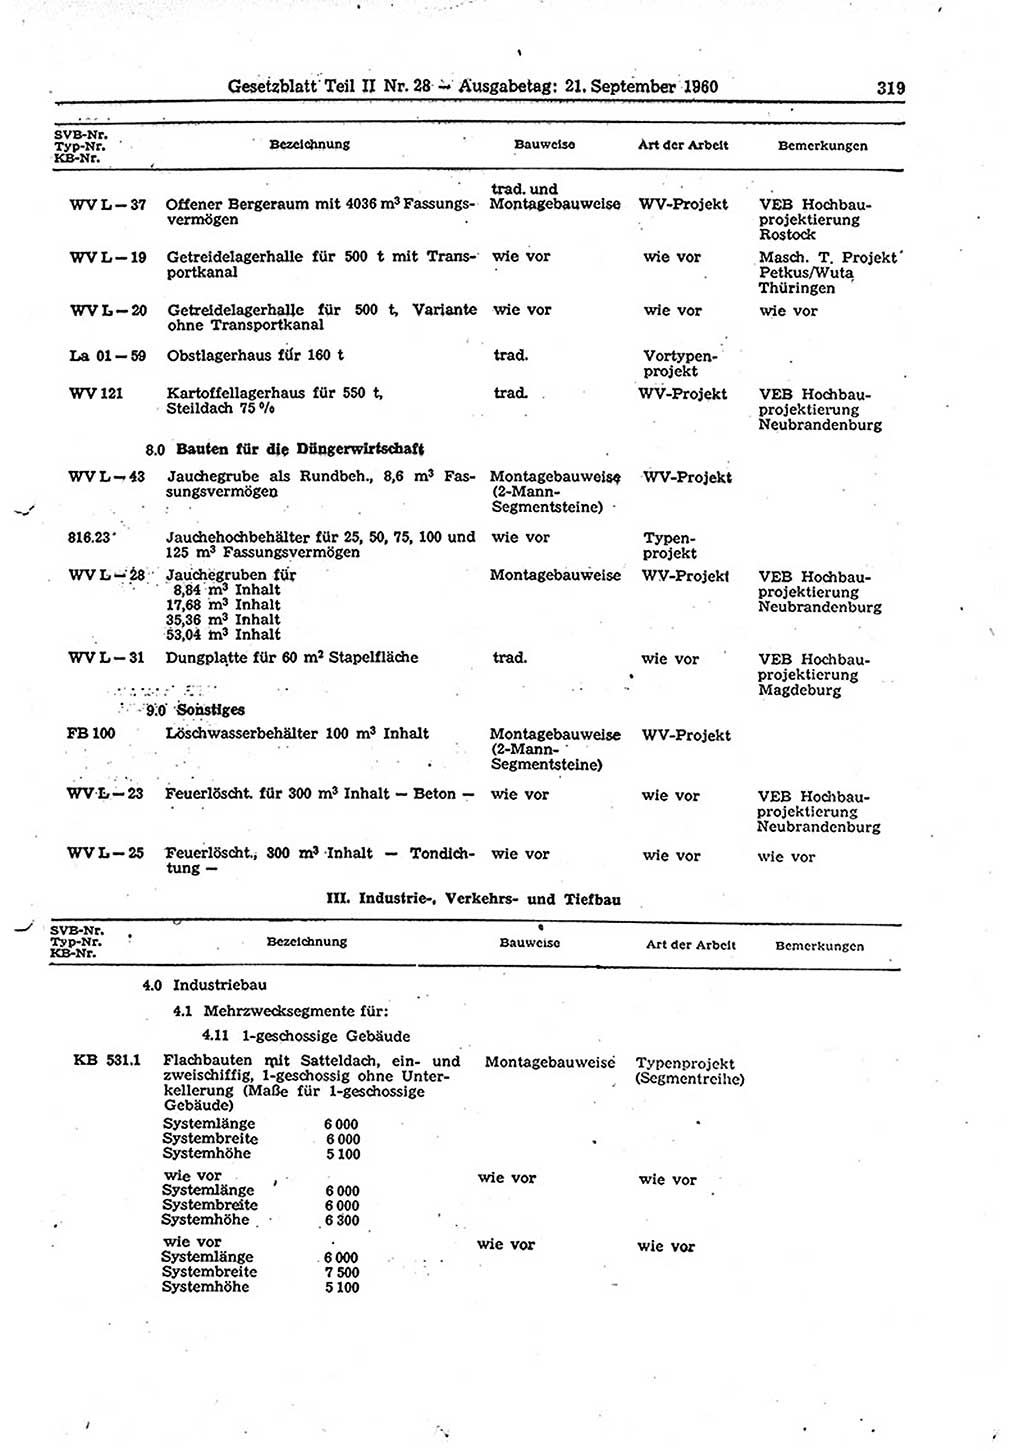 Gesetzblatt (GBl.) der Deutschen Demokratischen Republik (DDR) Teil ⅠⅠ 1960, Seite 319 (GBl. DDR ⅠⅠ 1960, S. 319)